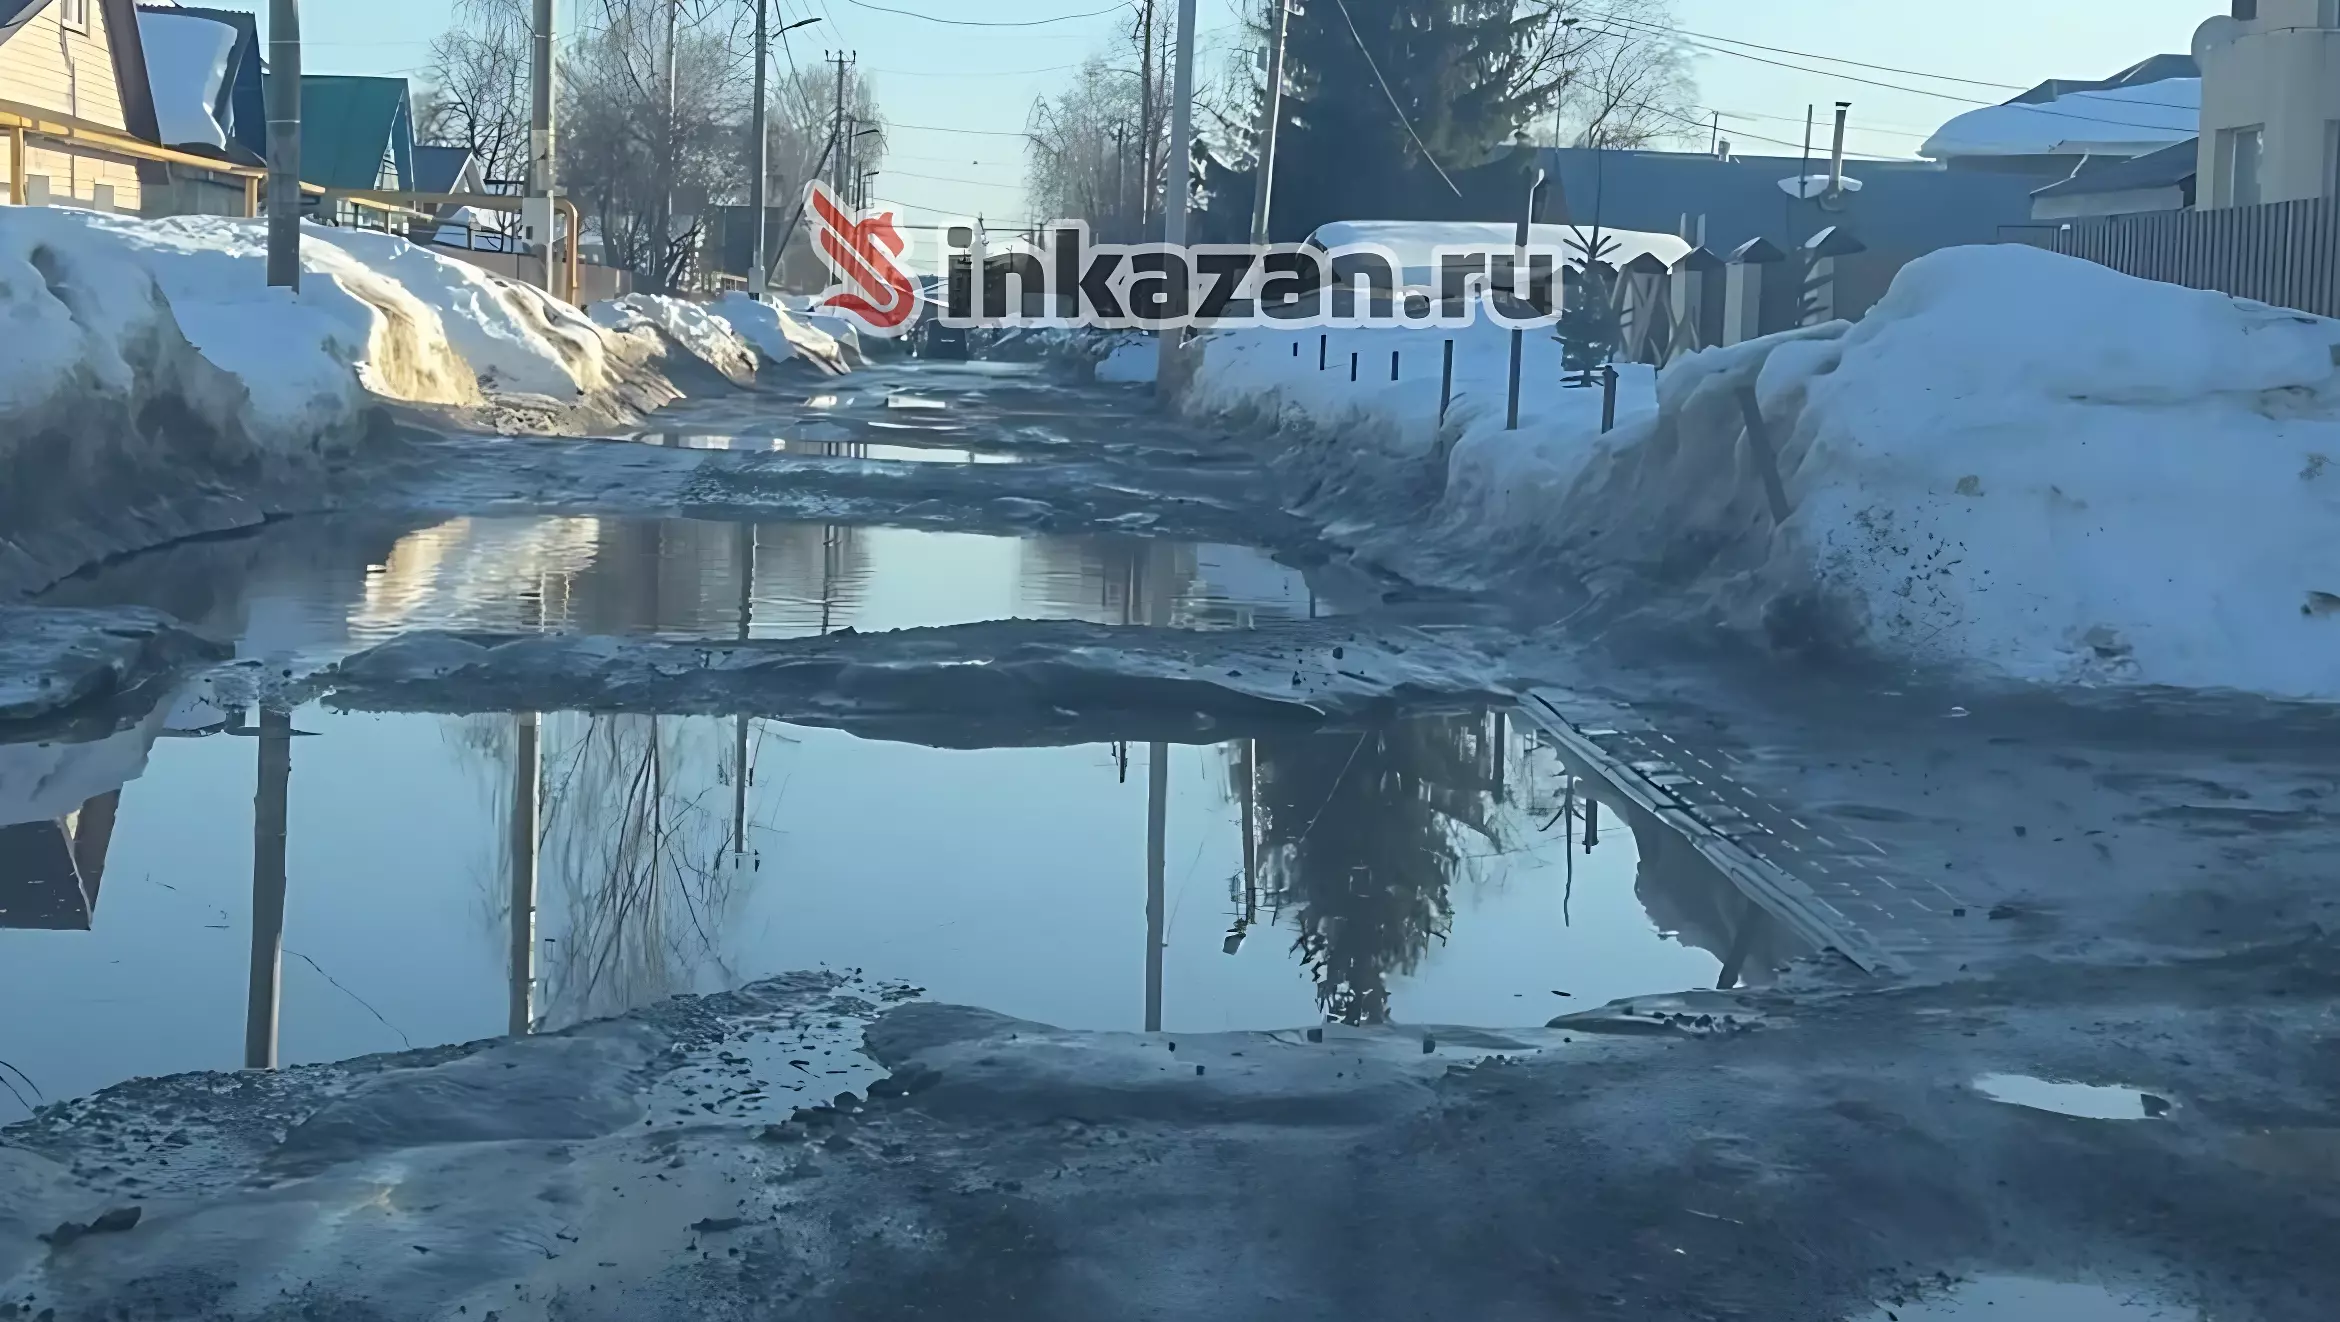 Казанцы жалуются на качество дорог в поселке Самосырово